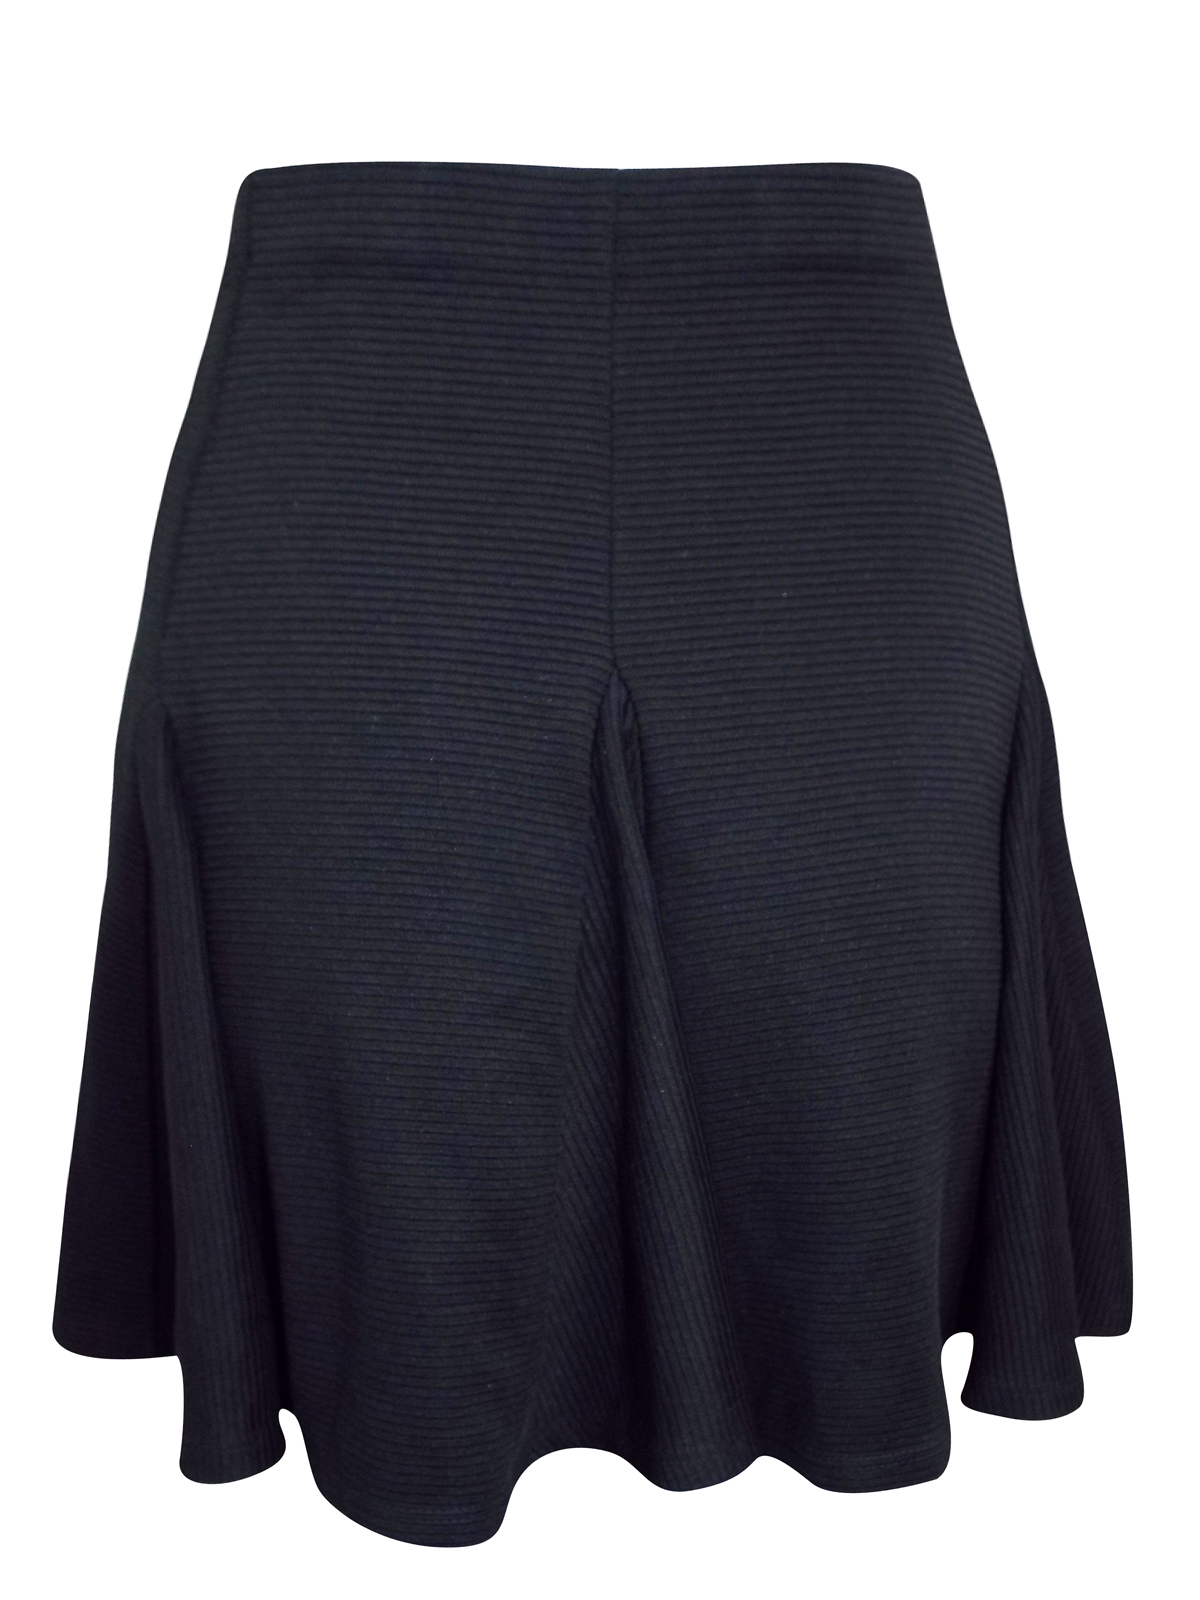 Miss Selfridge - - M1ss S3lfridge BLACK Textured Skater Skirt - Size 6 ...